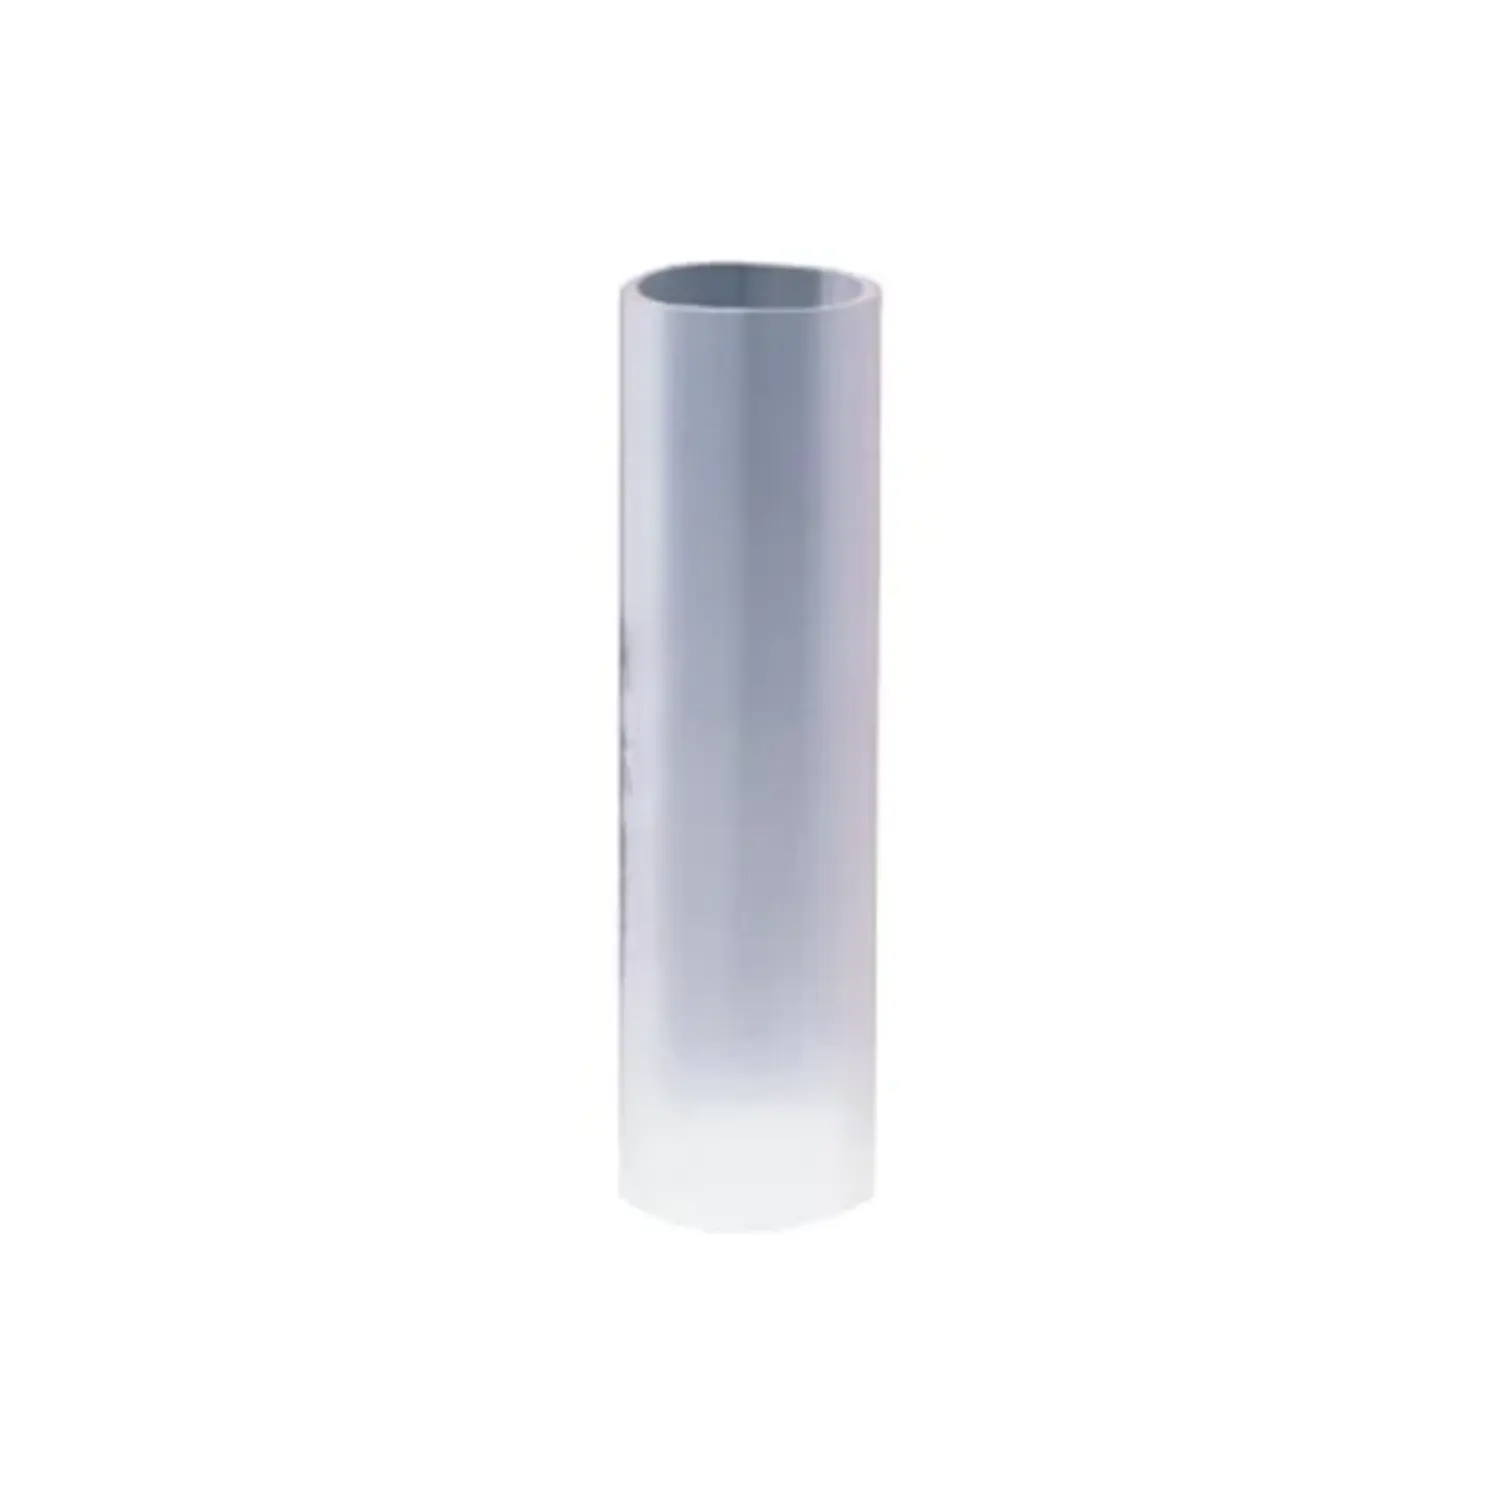 immagine giunto manicotto tubo corrugato incasso gewiss    32 mm trasparente